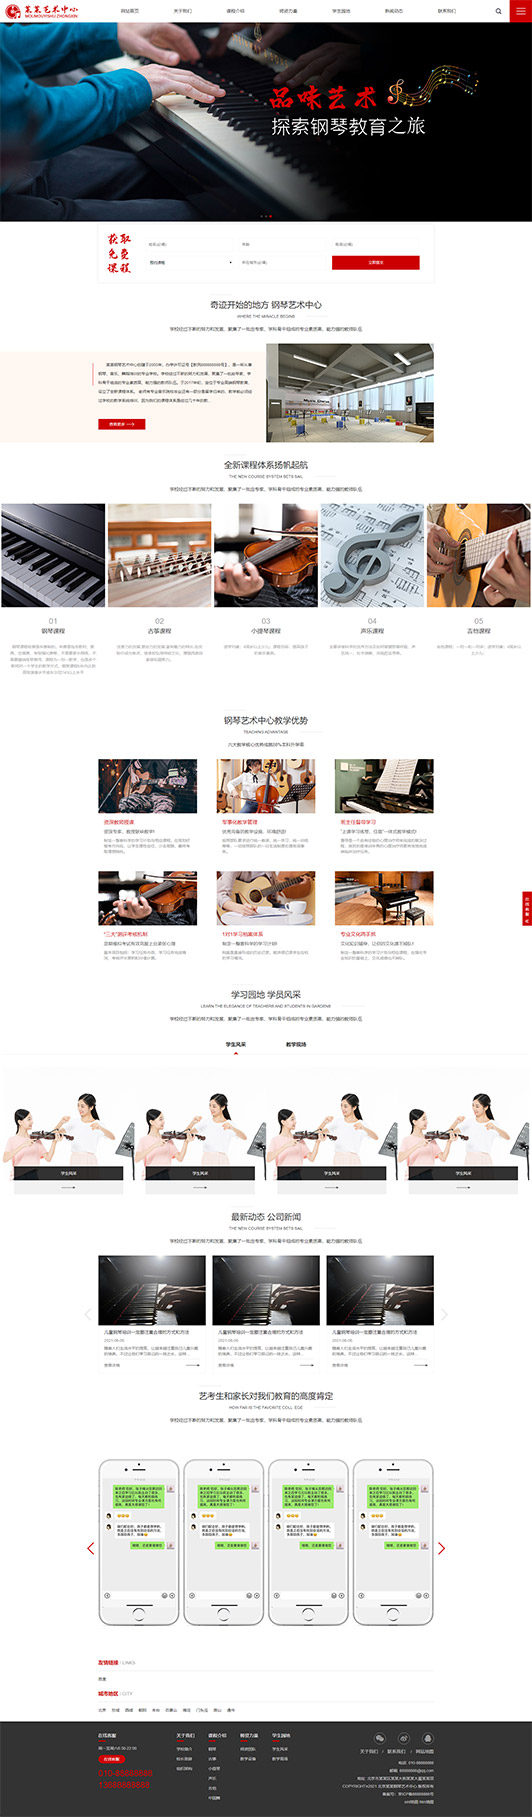 中卫钢琴艺术培训公司响应式企业网站